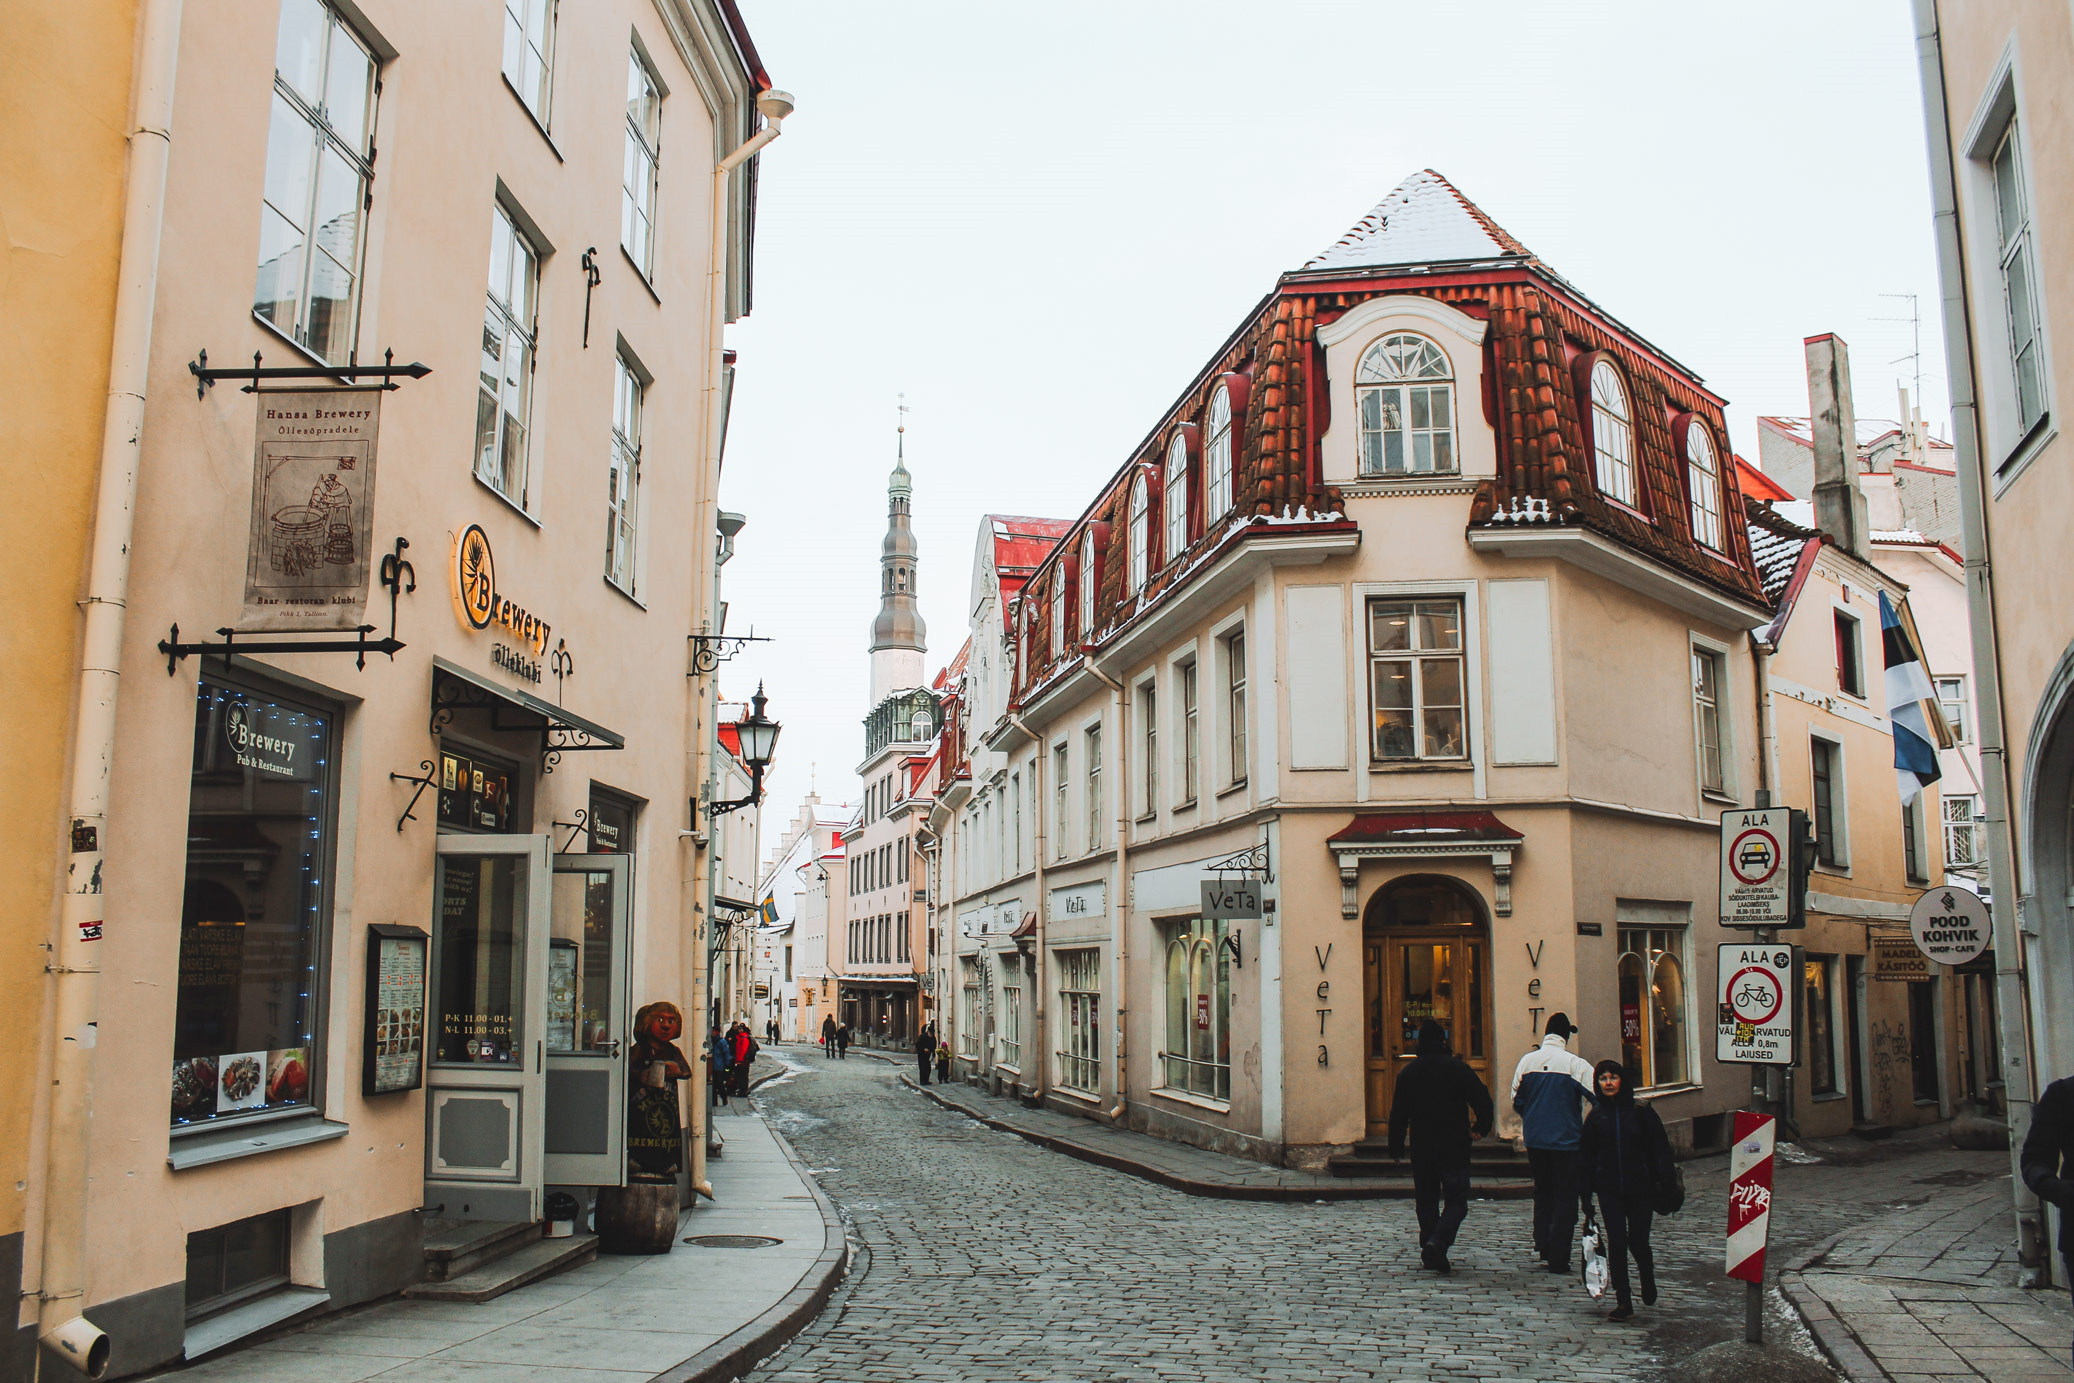 Thị trấn cổ của Tallinn là một trong những thành phố thời Trung cổ được bảo quản tốt nhất ở châu Âu. Bạn có thể đi dạo cả buổi ở đây mà không thấy chán, mỗi góc phố, công trình đều có bảng hướng dẫn bằng tiếng Anh kể cho bạn nghe những câu chuyện lịch sử qua bao thăng trầm của Tallinn. Bạn cũng đừng quên ghé qua những quán cafe trong phố cổ và nhâm nhi một tách chocolate nóng để tự mình cảm nhận không khí bình yên giữa lòng châu Âu cổ kính.